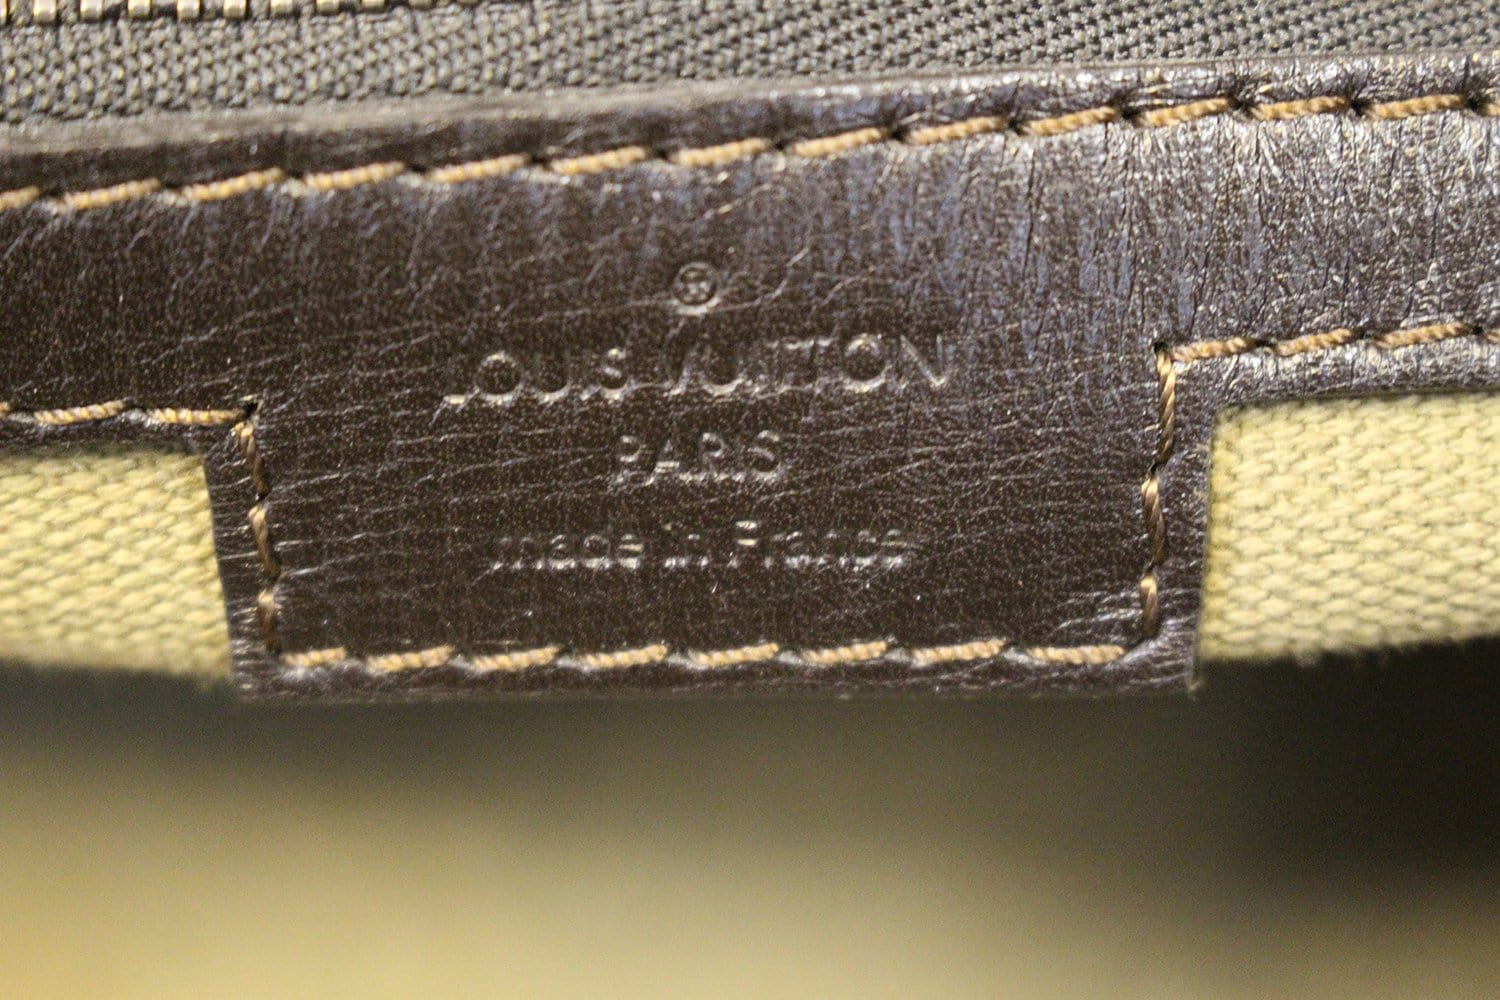 Louis Vuitton Editions Limitées Travel bag 371564